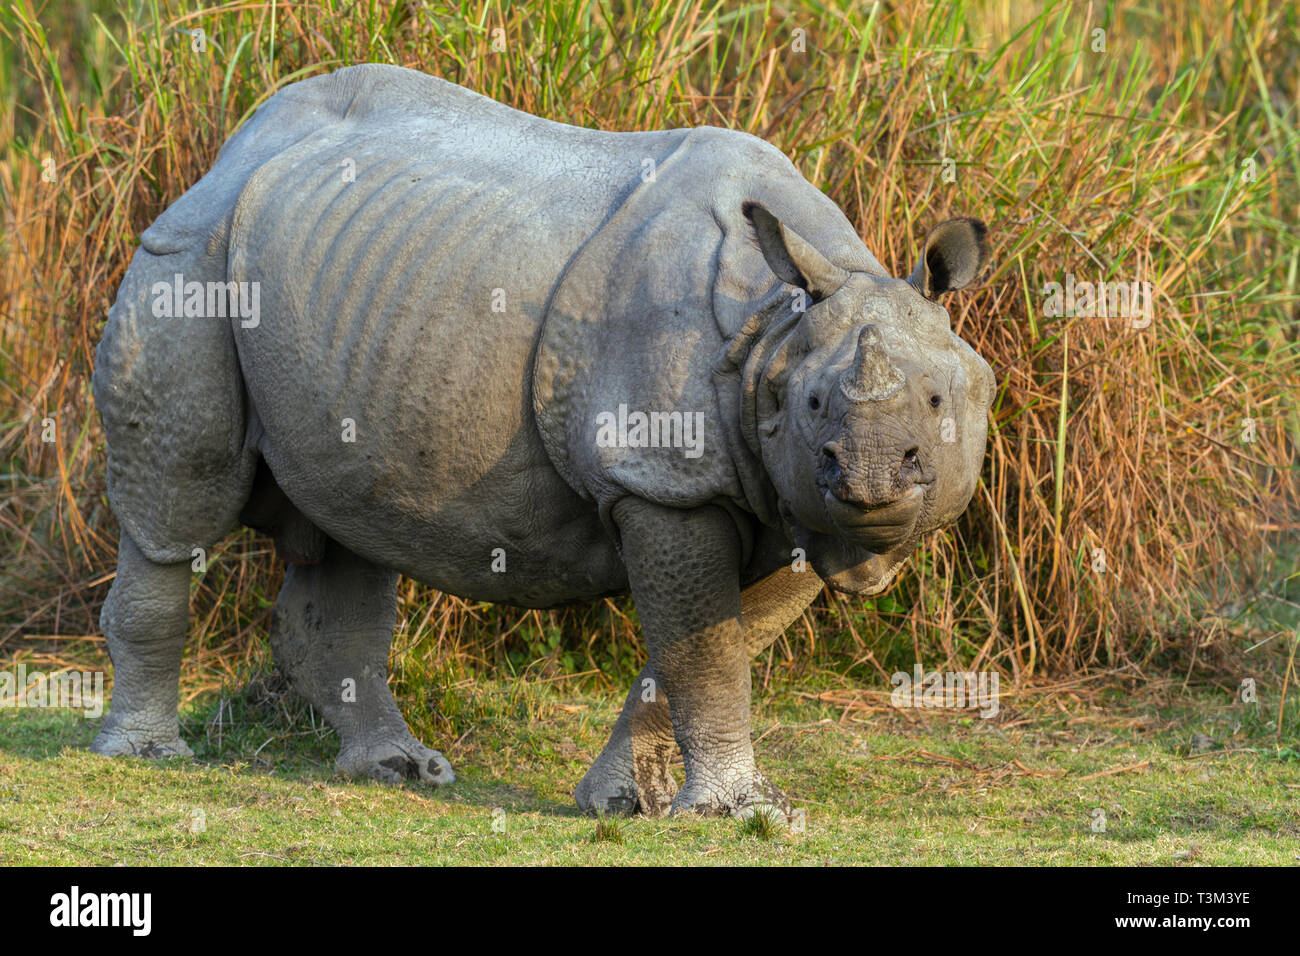 One Horned Indian Rhinoceros or Rhinoceros unicornis in Kaziranga national park Assam India Stock Photo